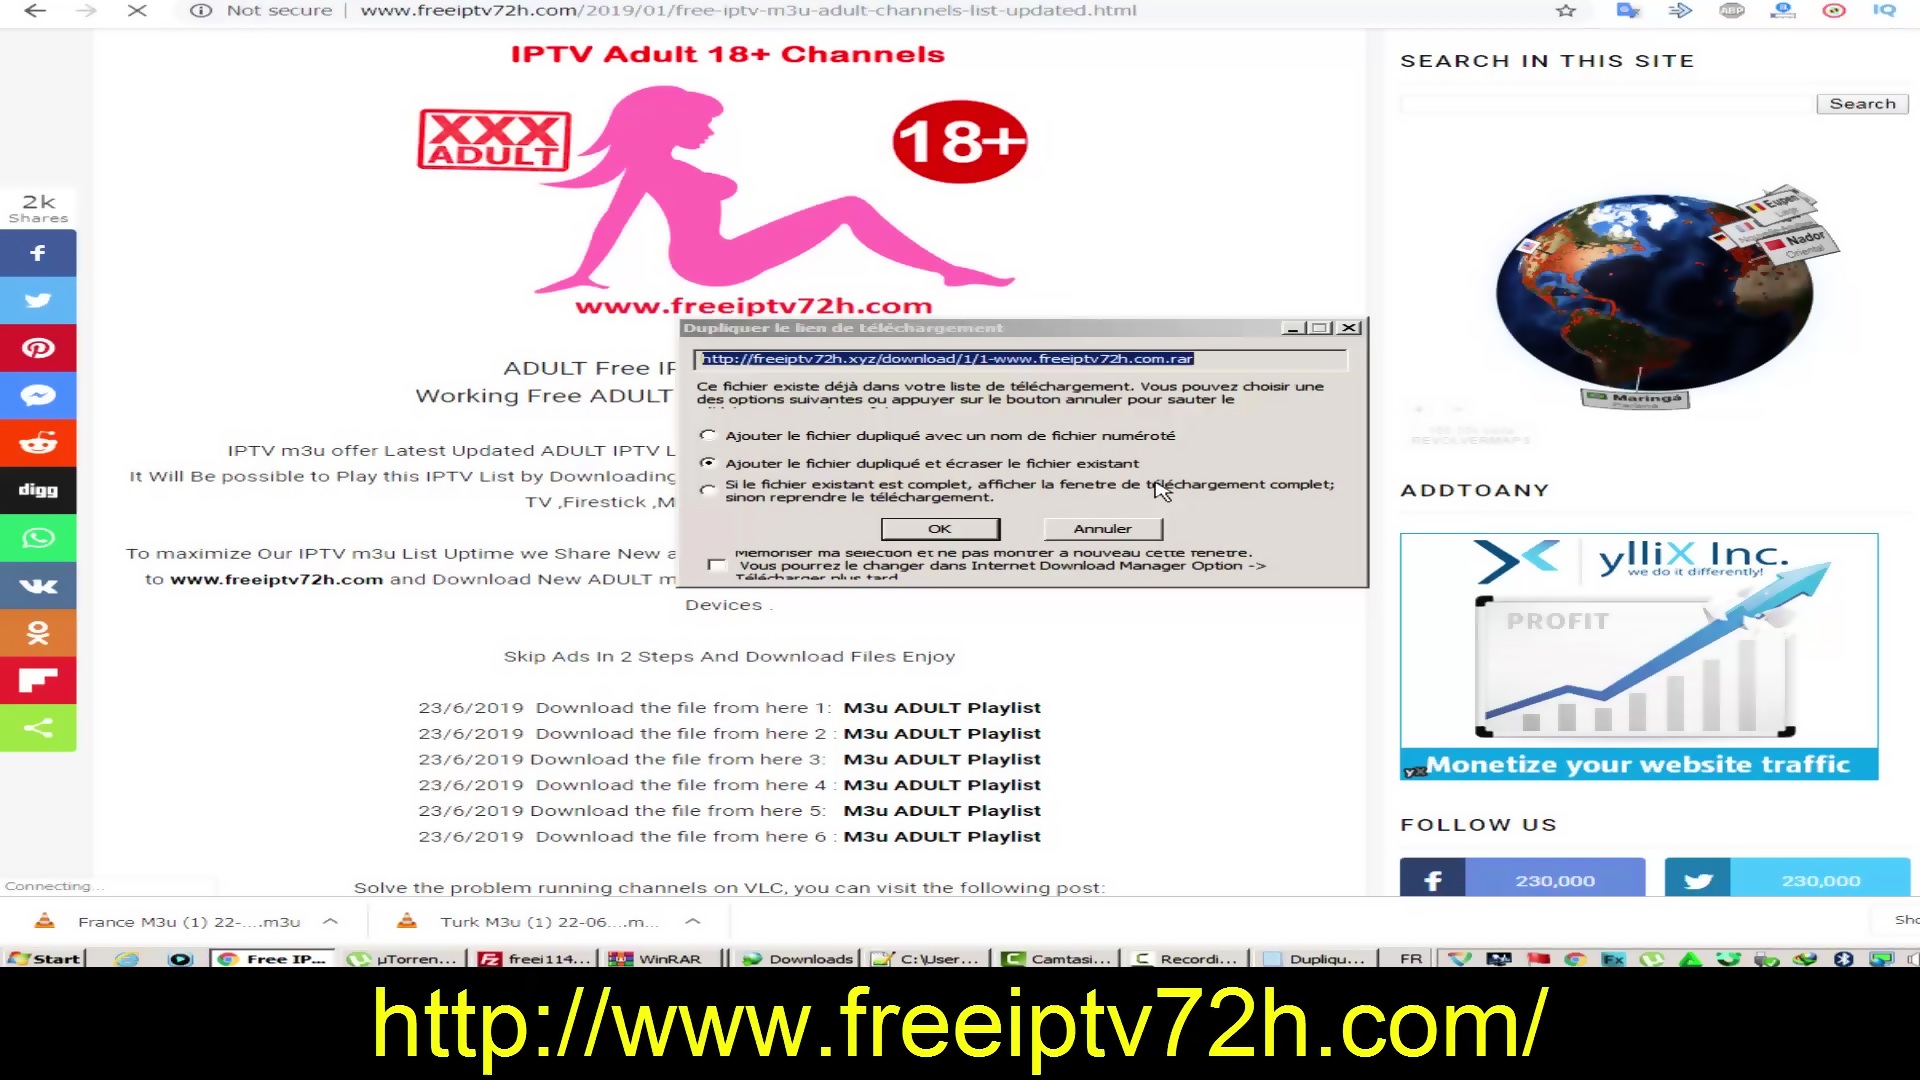 Free iptv m3u list x adult 18 channels